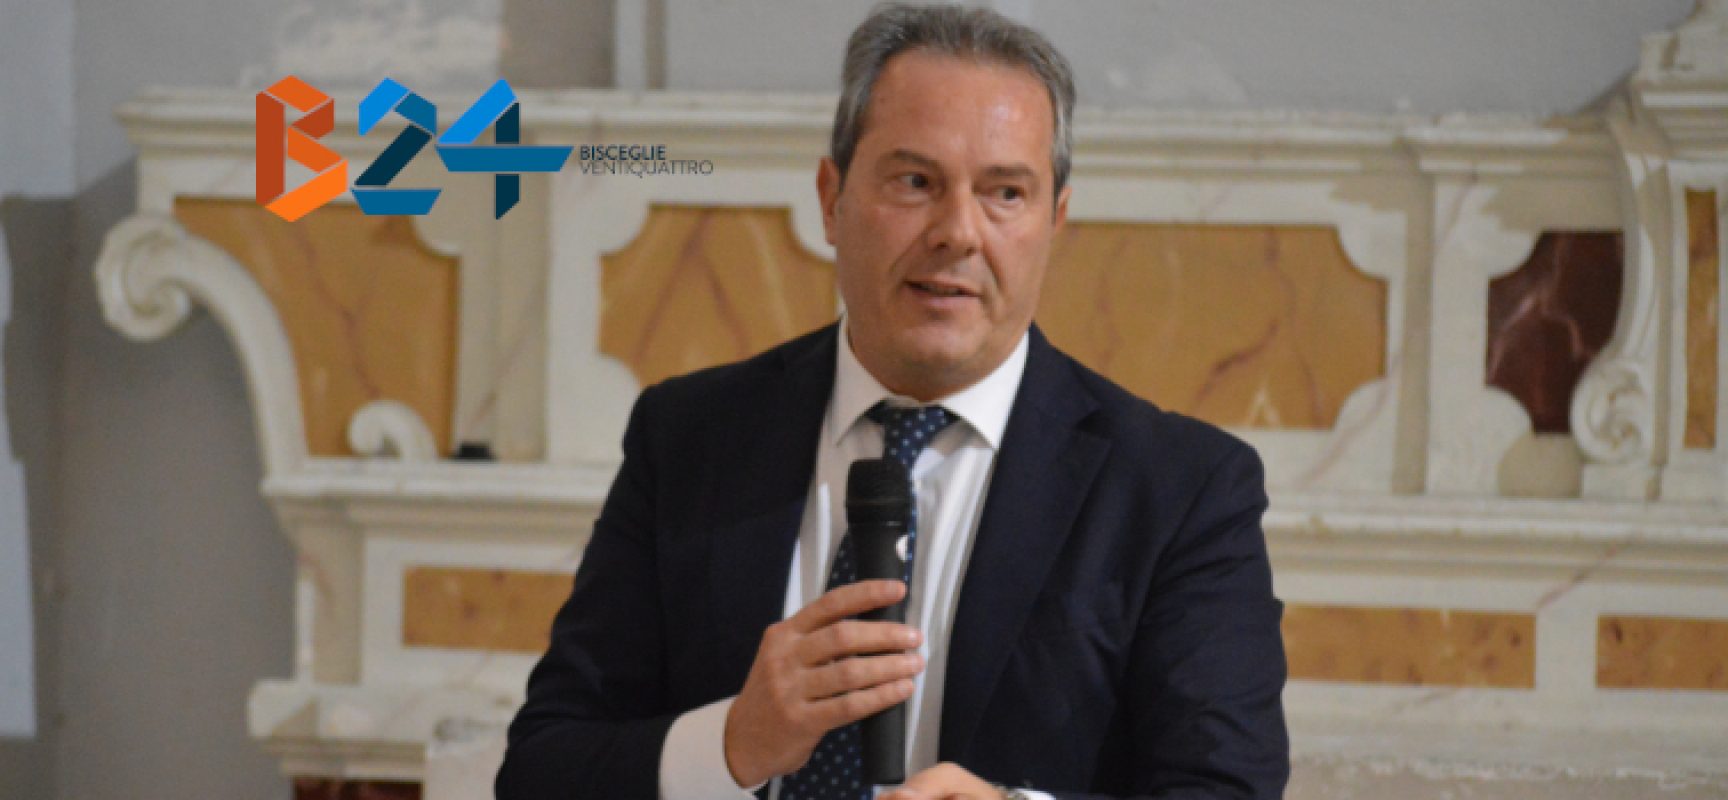 Decreto ingiuntivo dopo ricorso Spina, l’ex sindaco: “Amministrazione condannata a pagare”